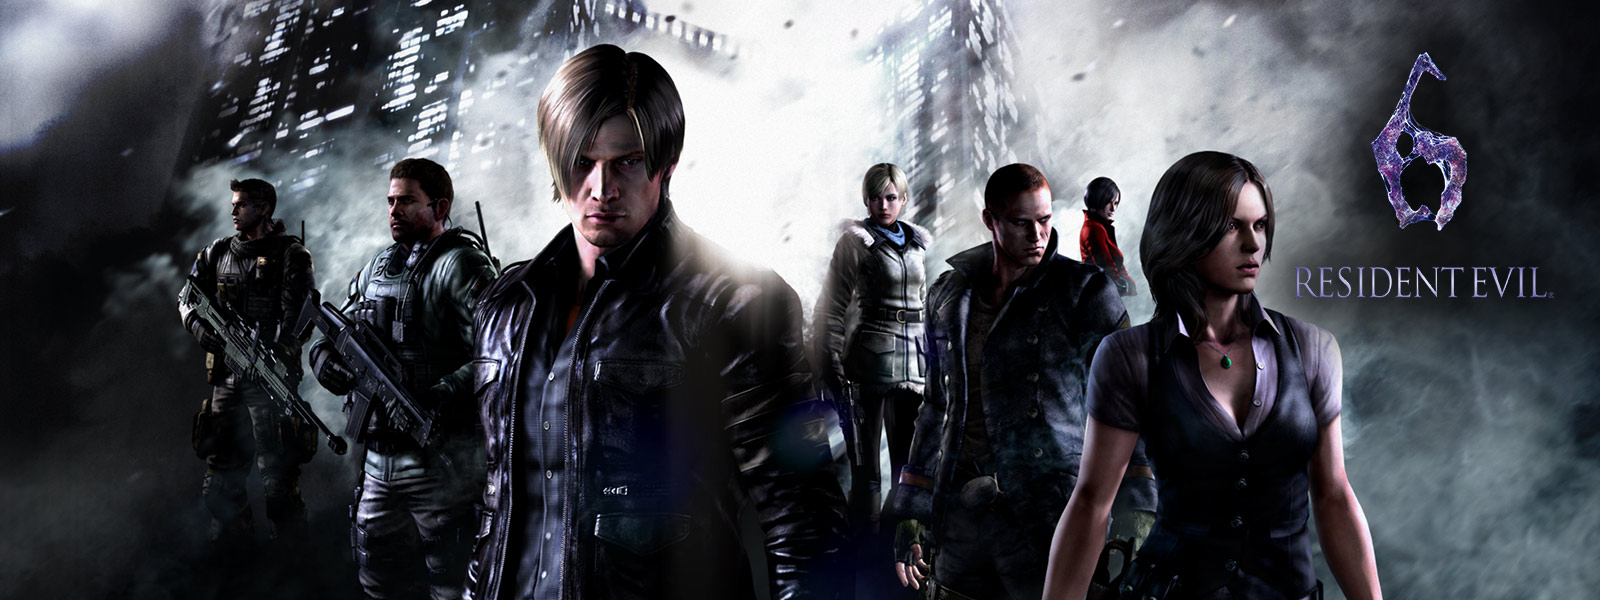 Resident Evil 6, az összes Resident Evil-karakter felsorakozik a baljós felhőkarcolók előtt